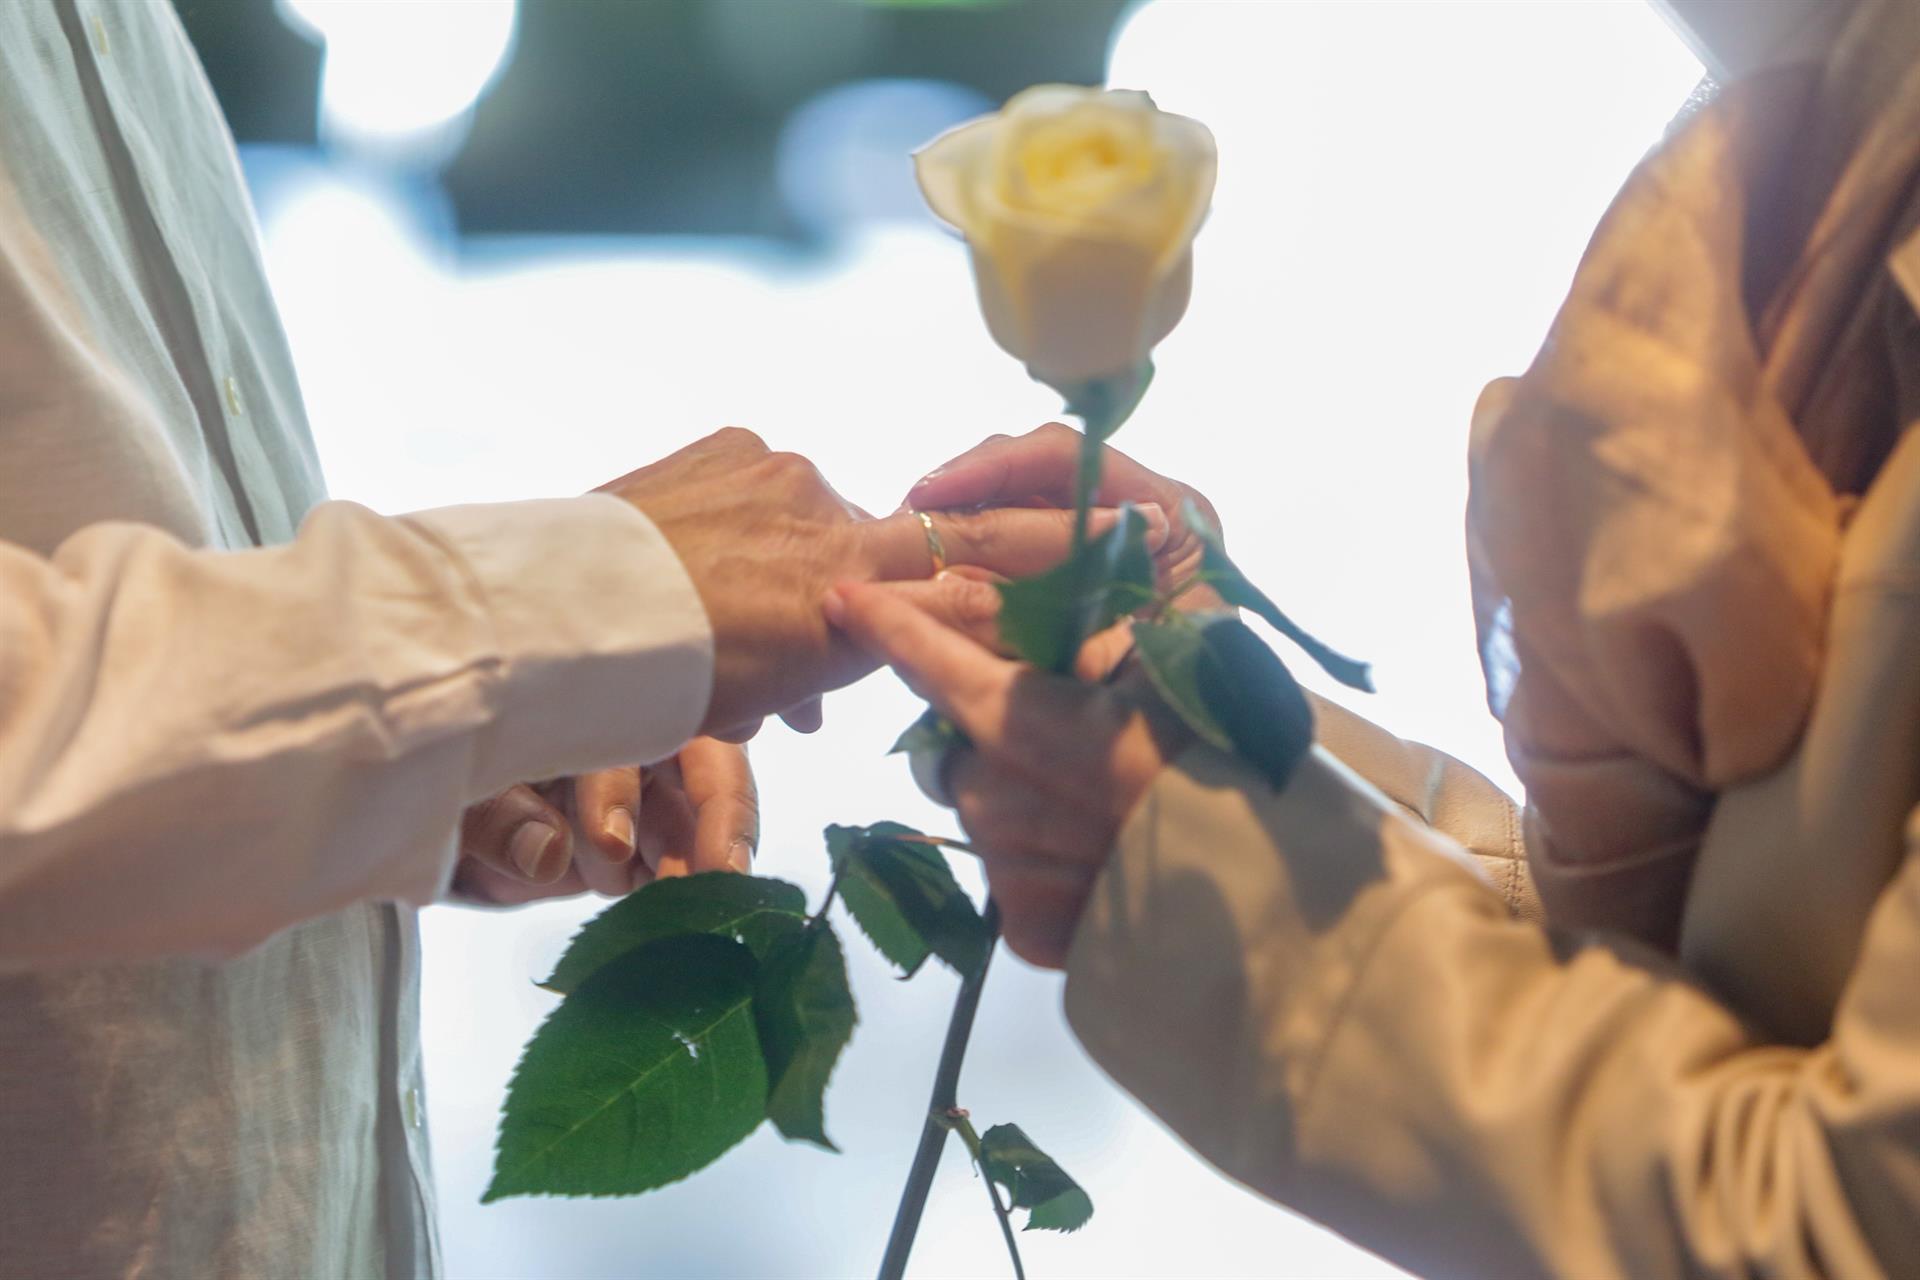 Cádiz y Granada han oficiado las bodas civiles más caras en 2022 frente a la gratuidad de Sevilla, Huelva y Almería